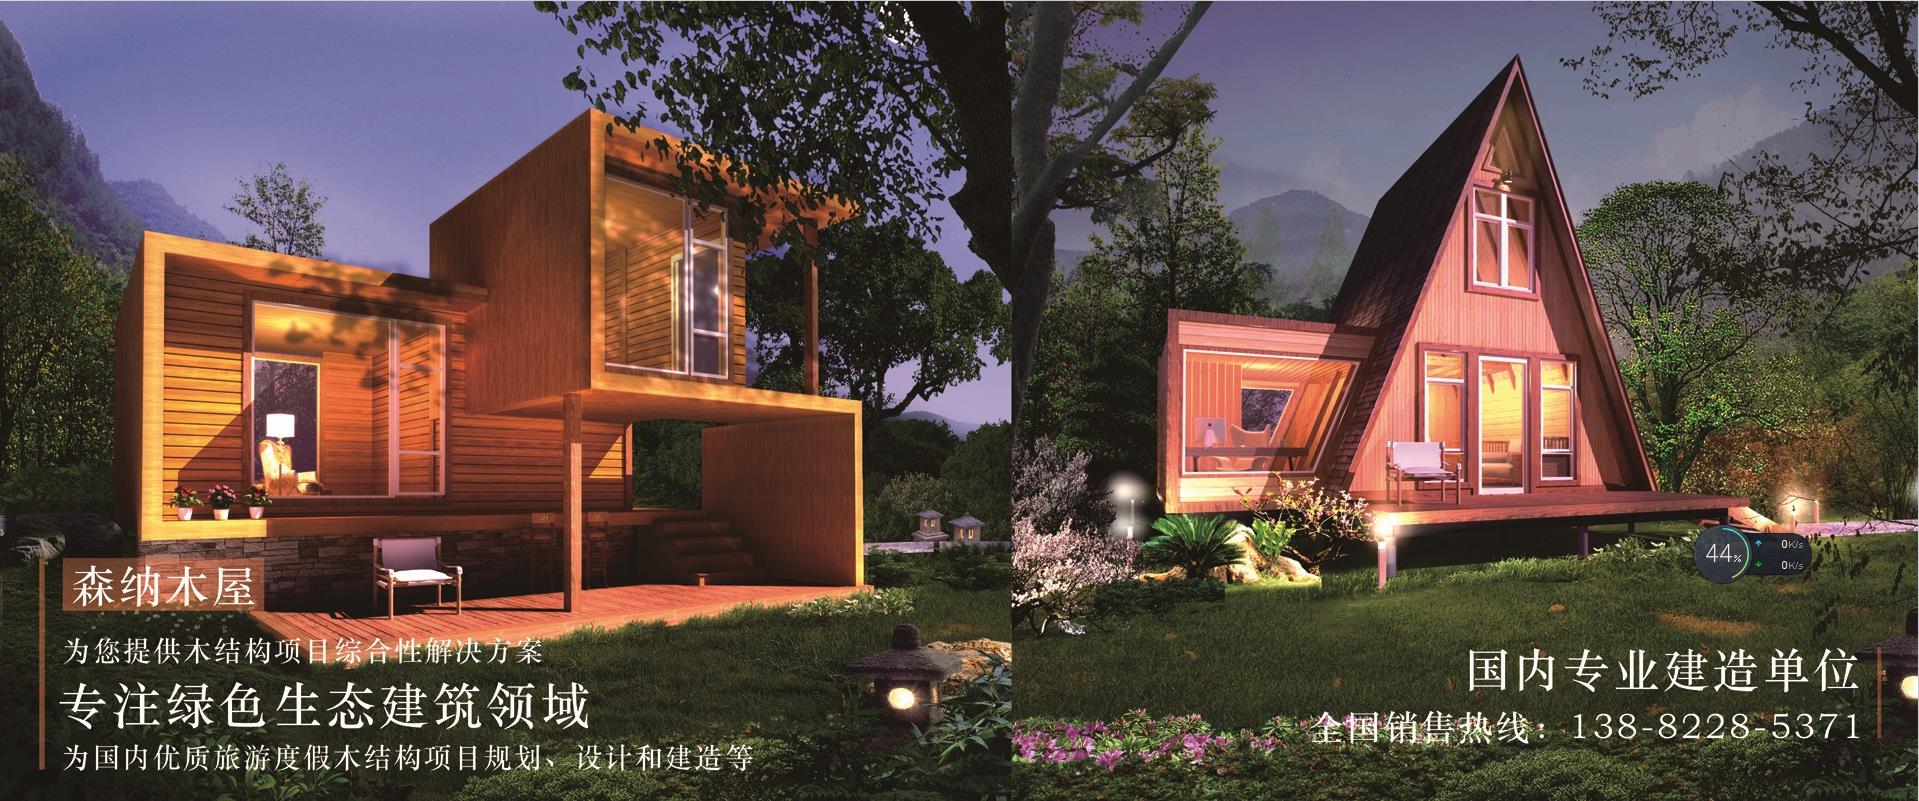 生態木結構房屋